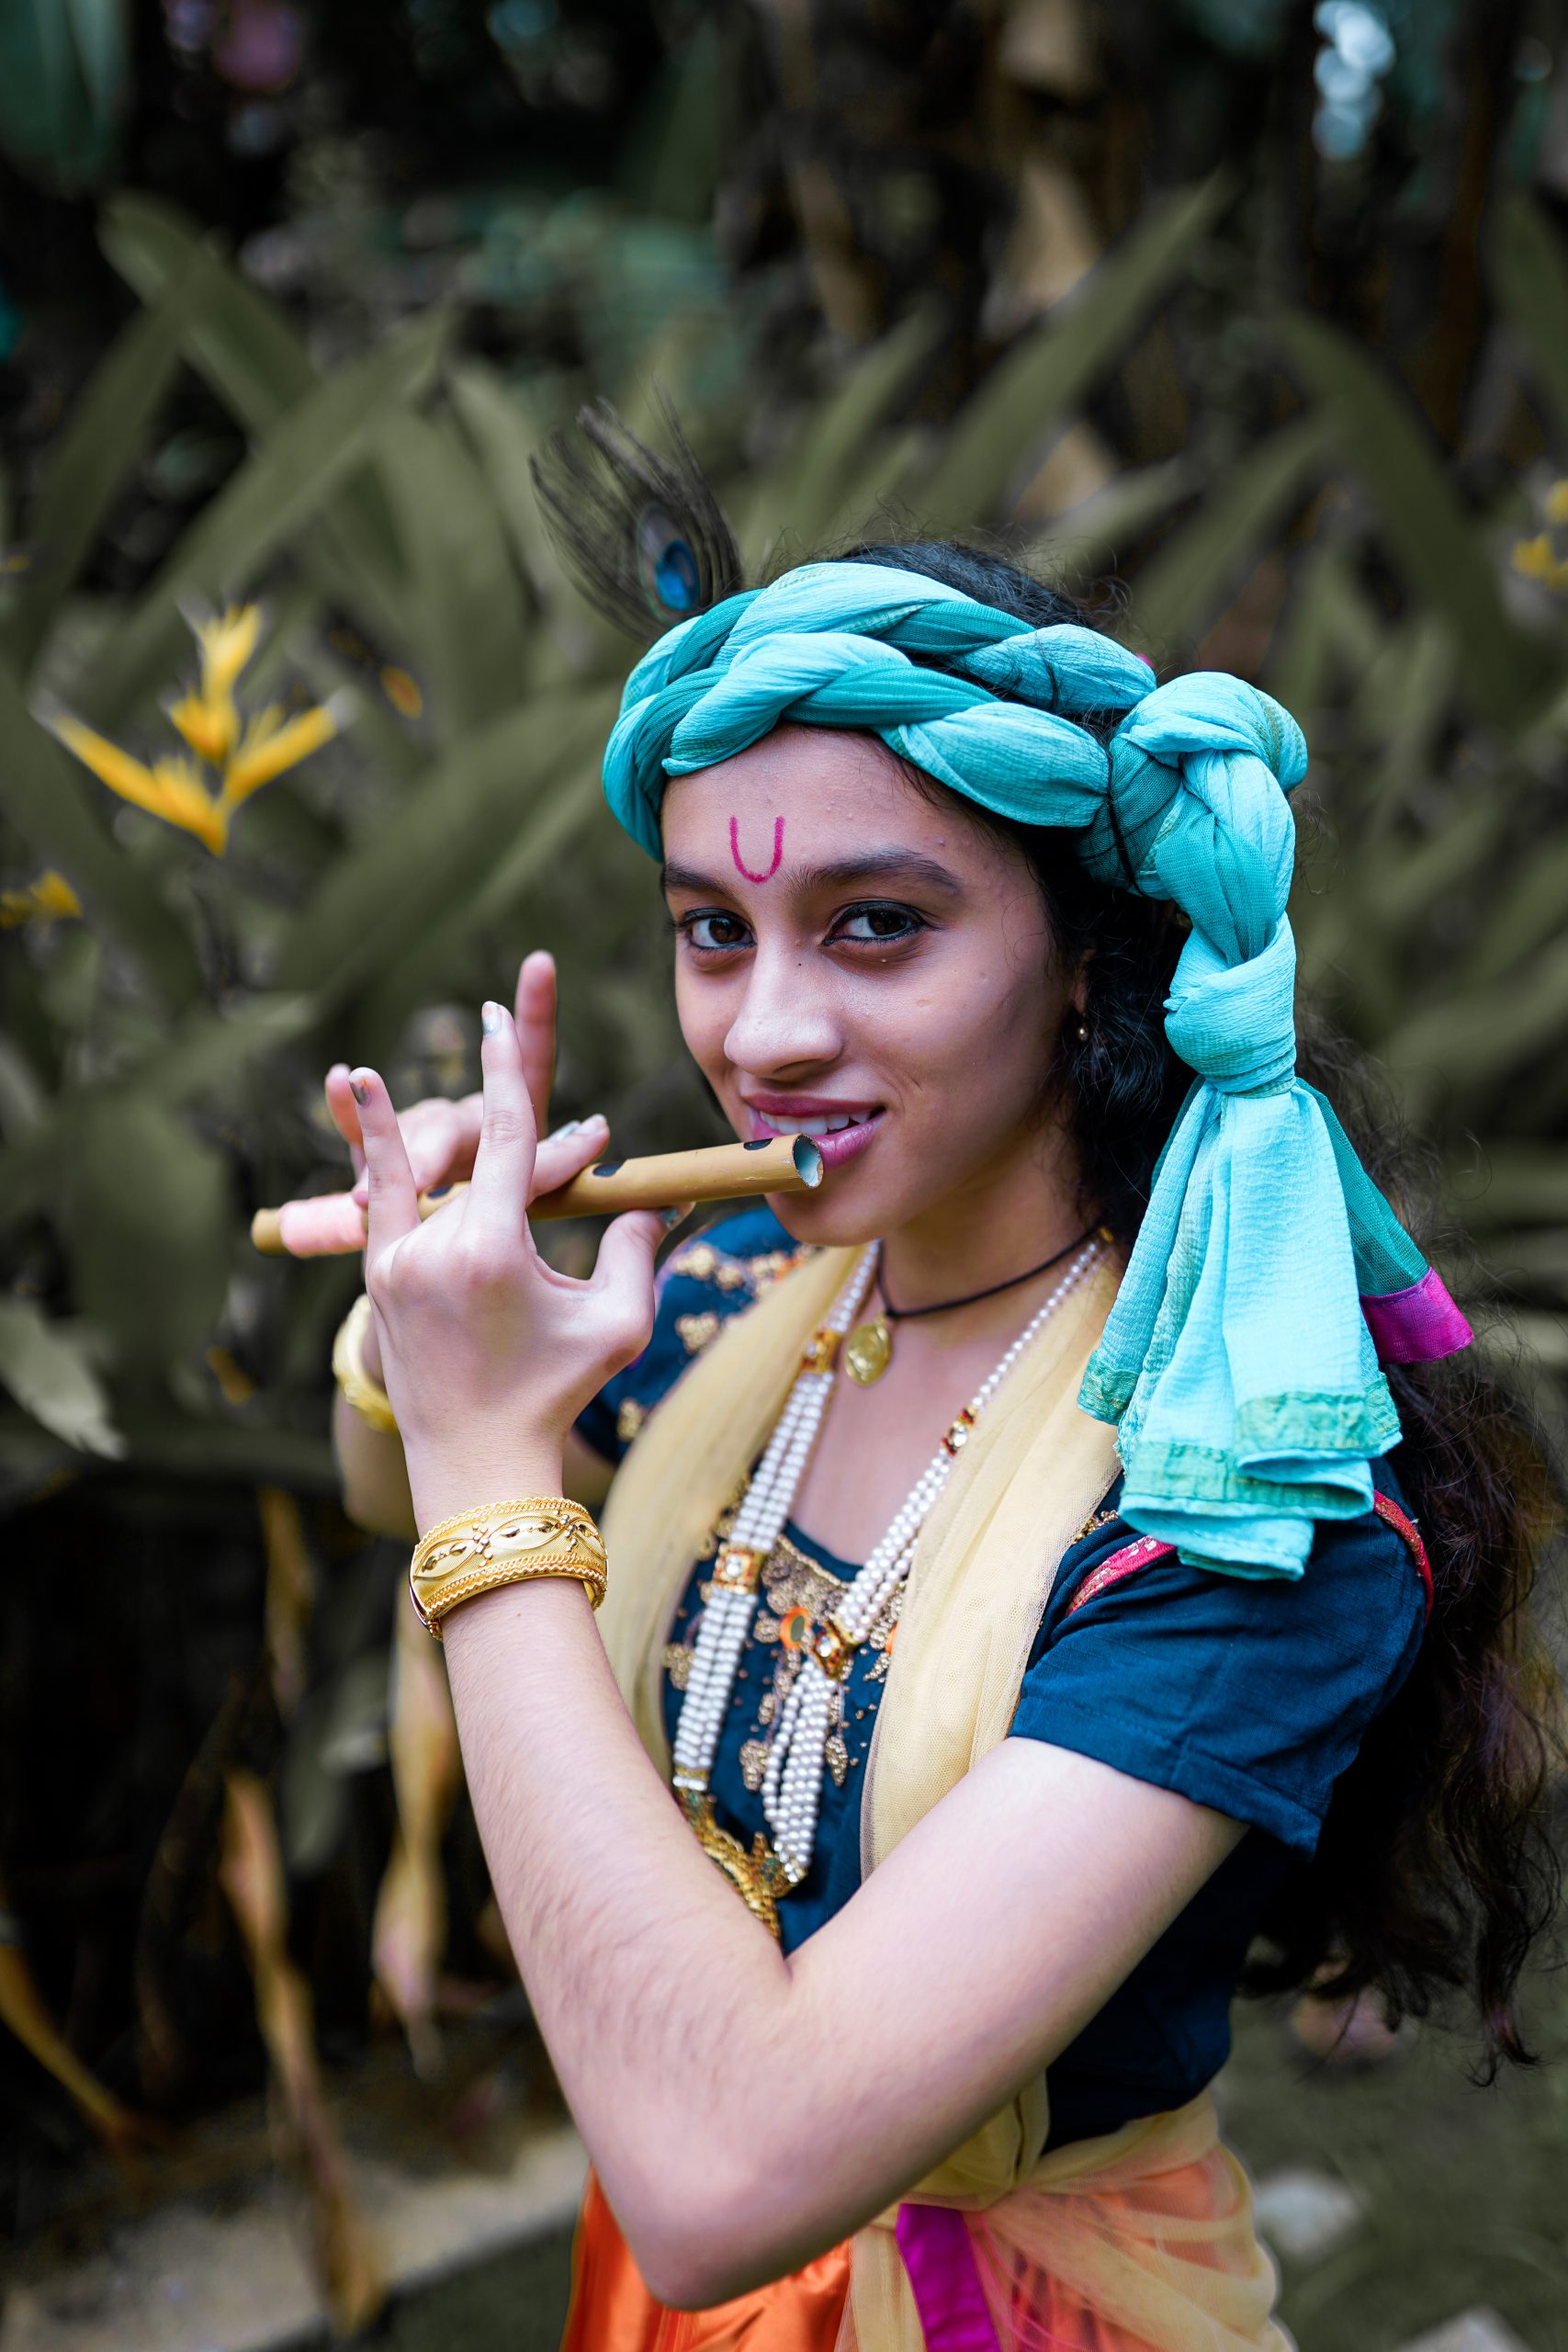 A girl in Krishna costume